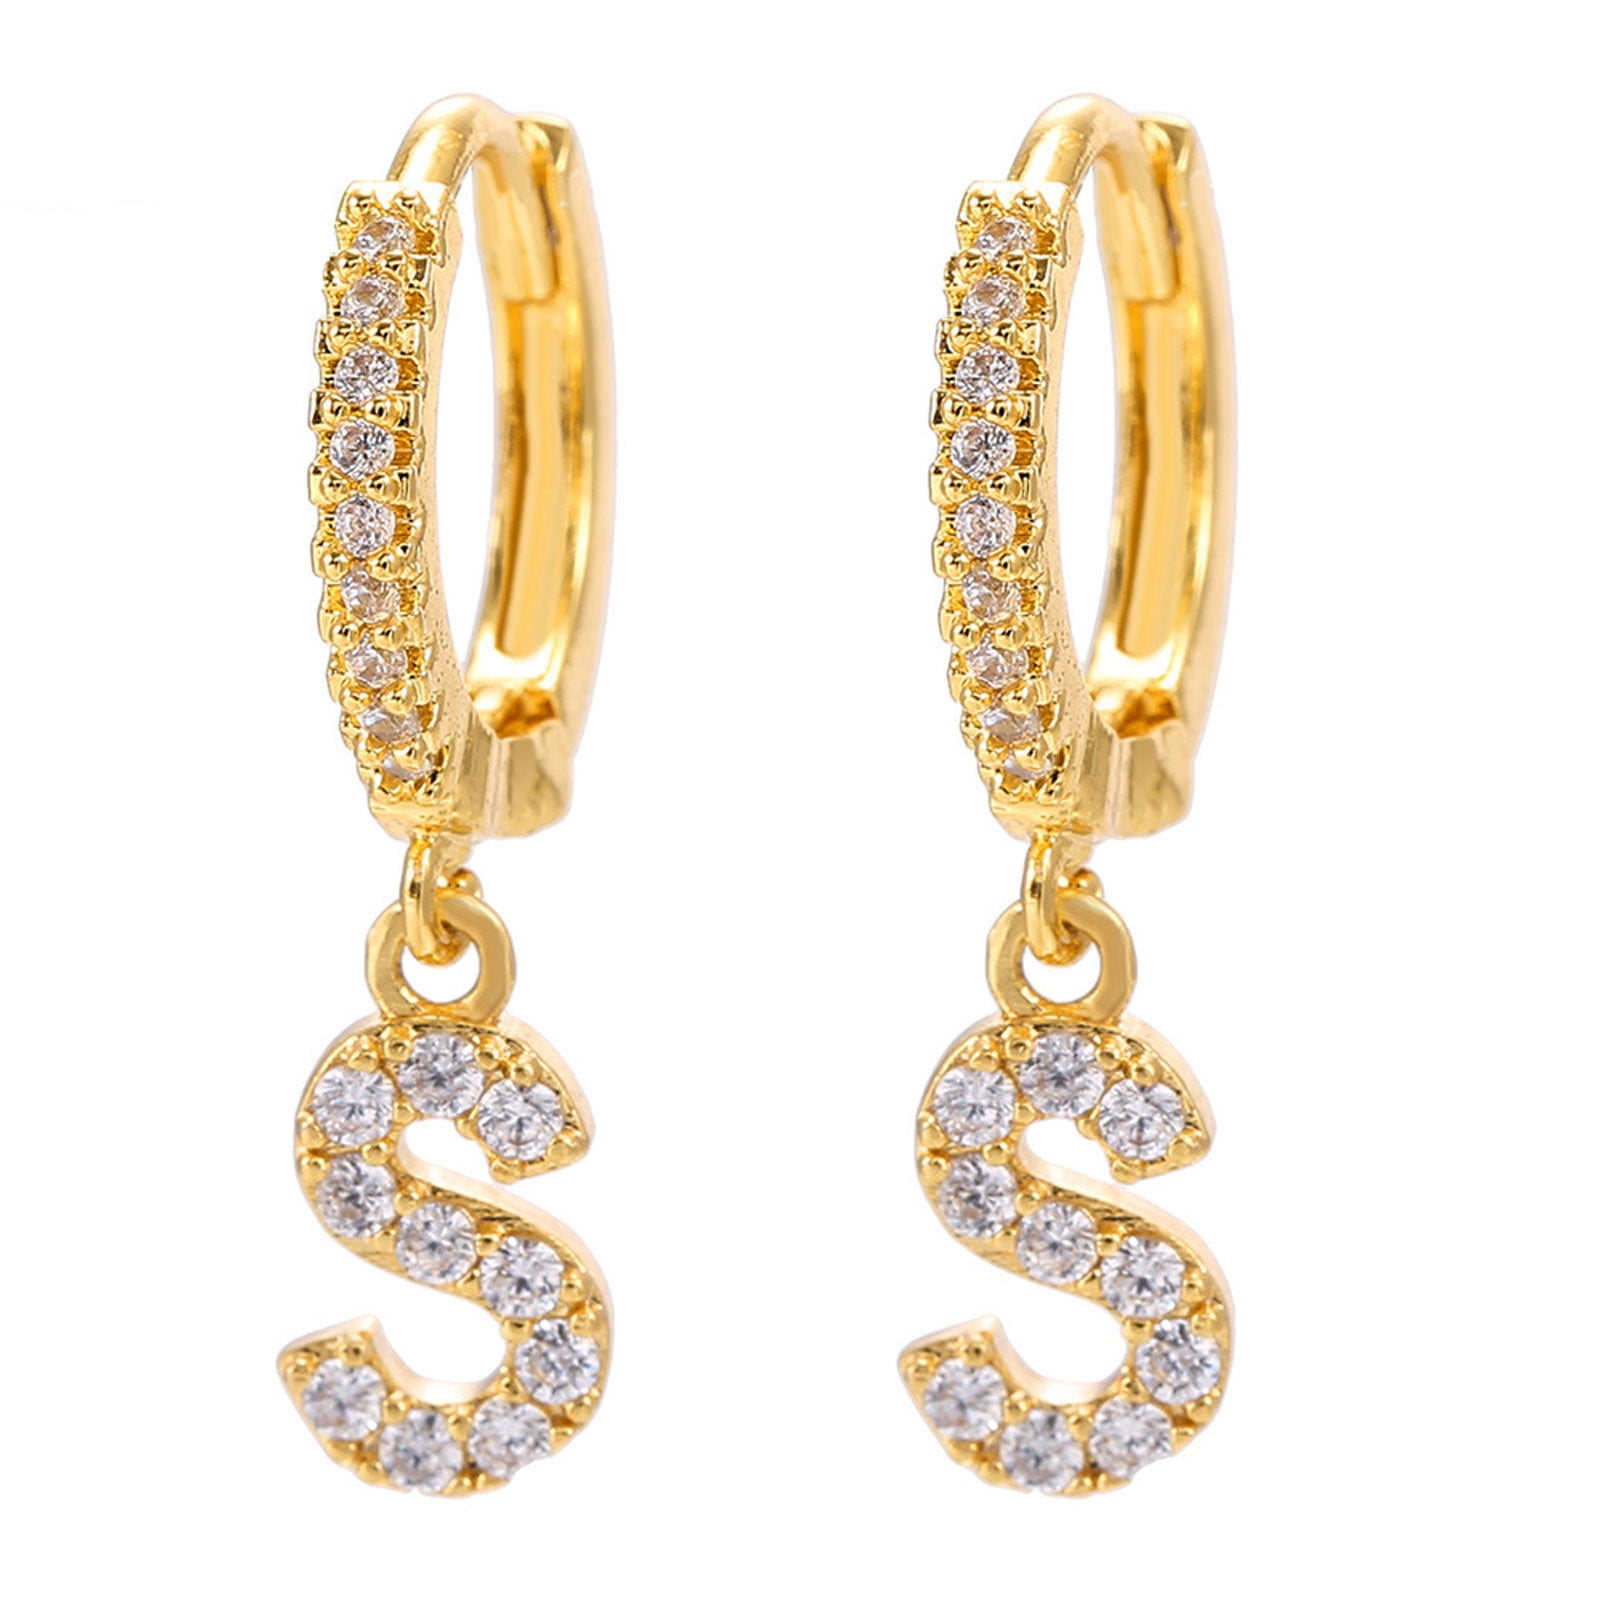 Buy Wholesale China Popular 10 Cm Rhinestone Hoop Earrings For Women  Wholesale & Hoop Earring at USD 4.5 | Global Sources